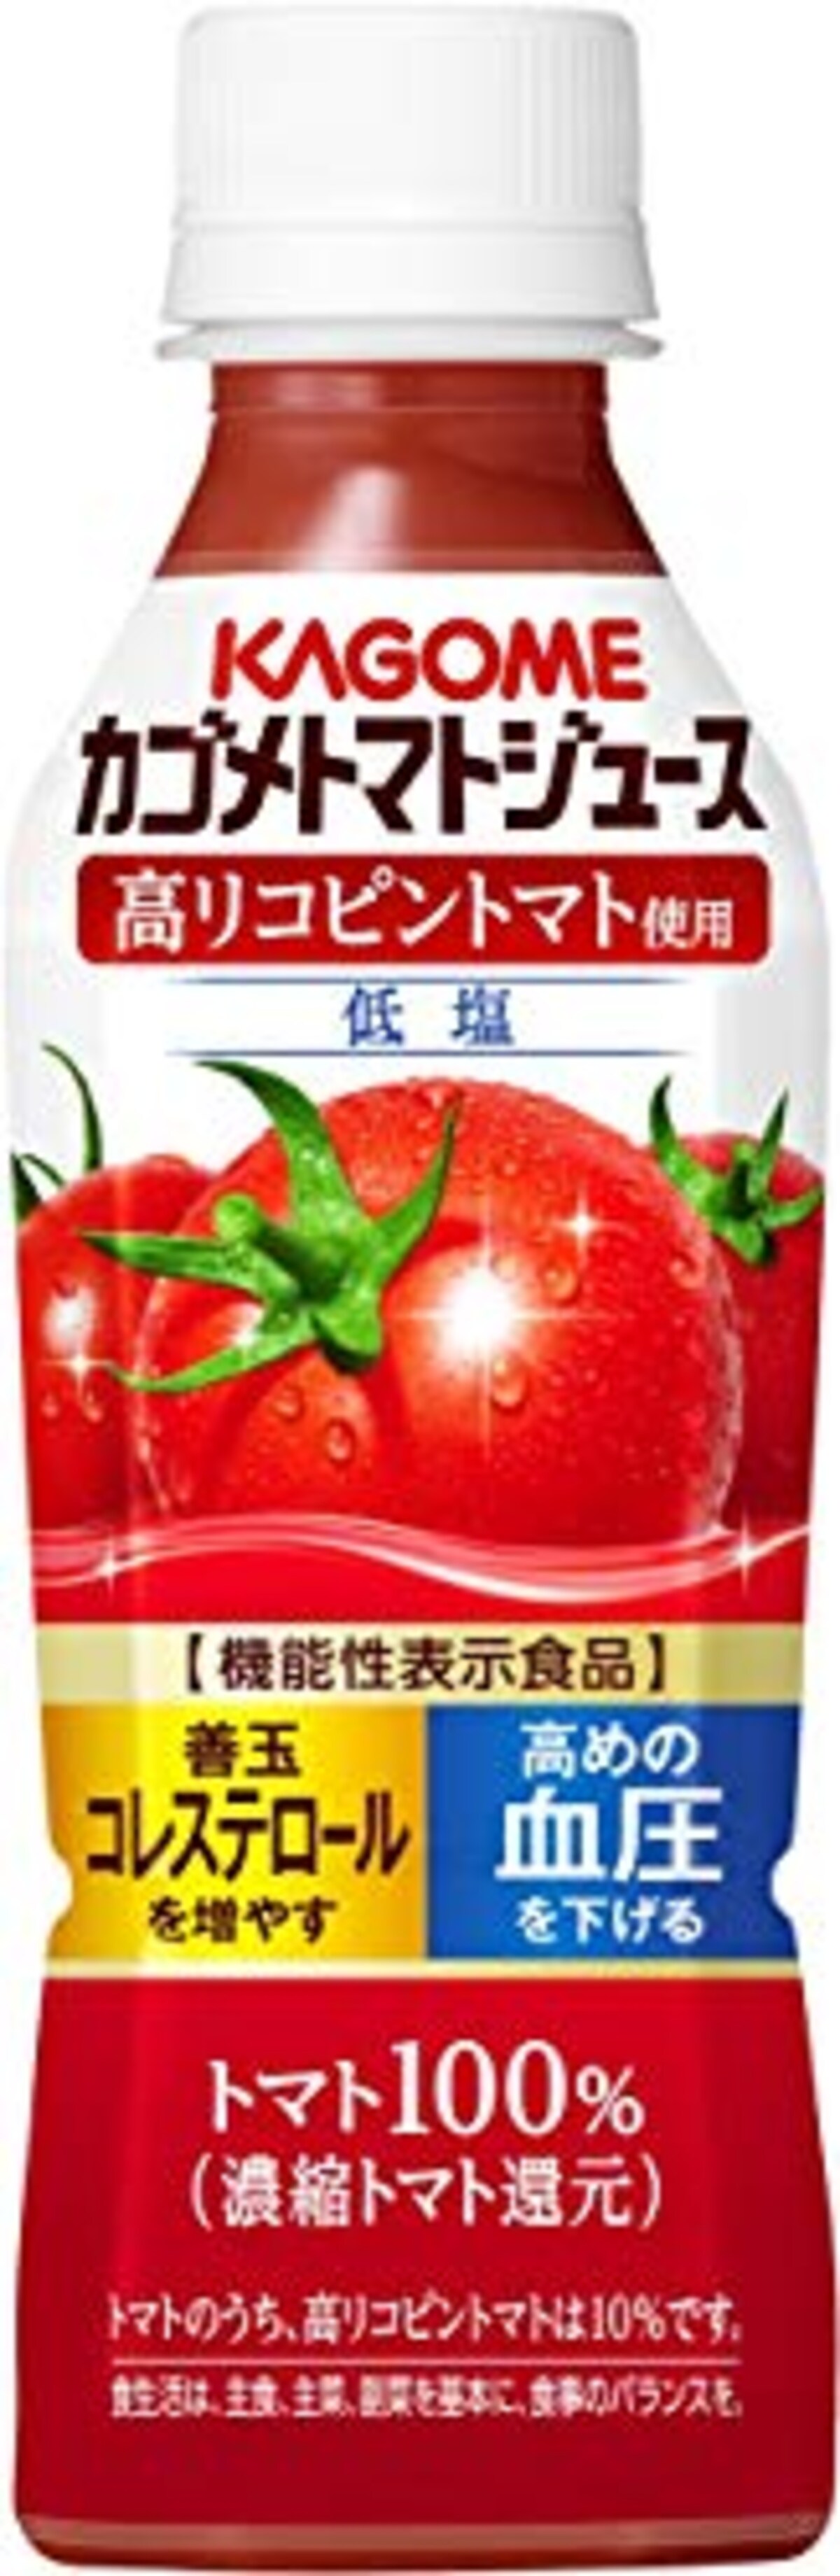 トマトジュース 高リコピントマト使用